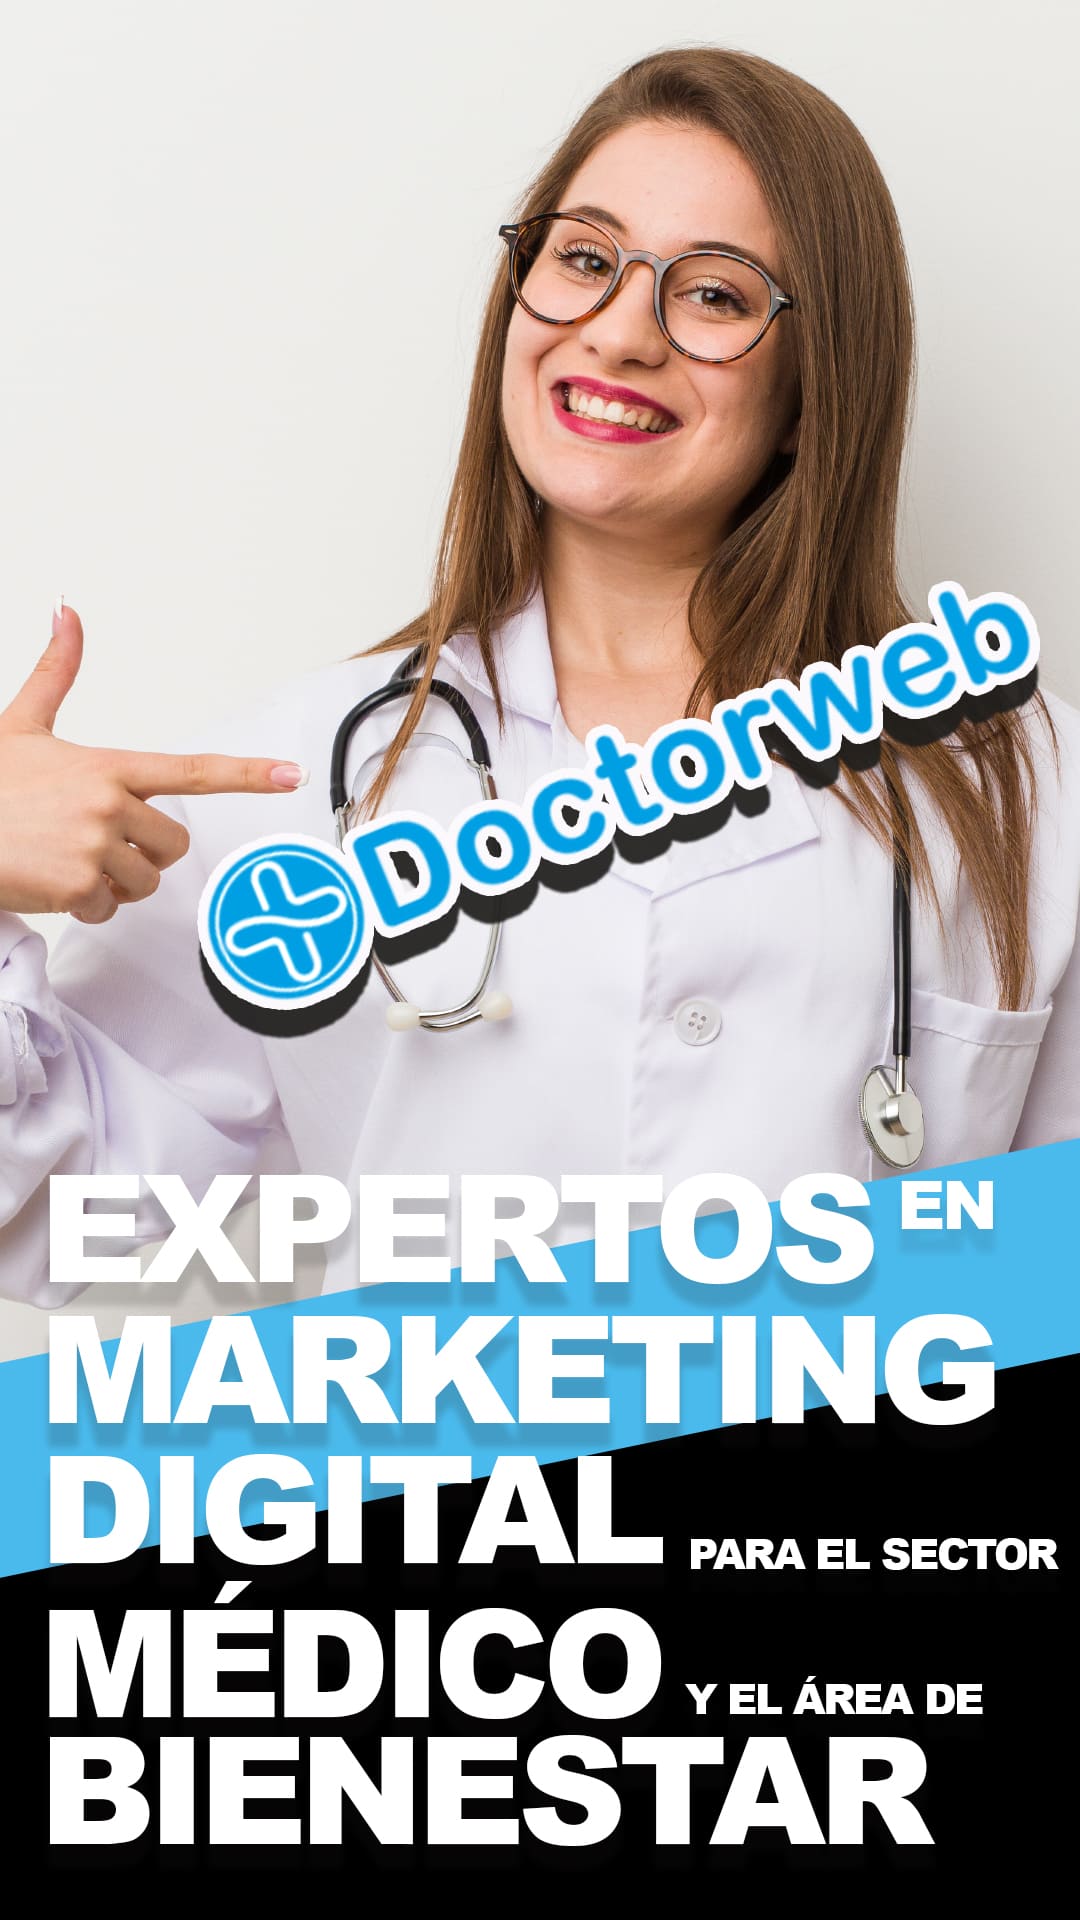 agencia marketing digital medico